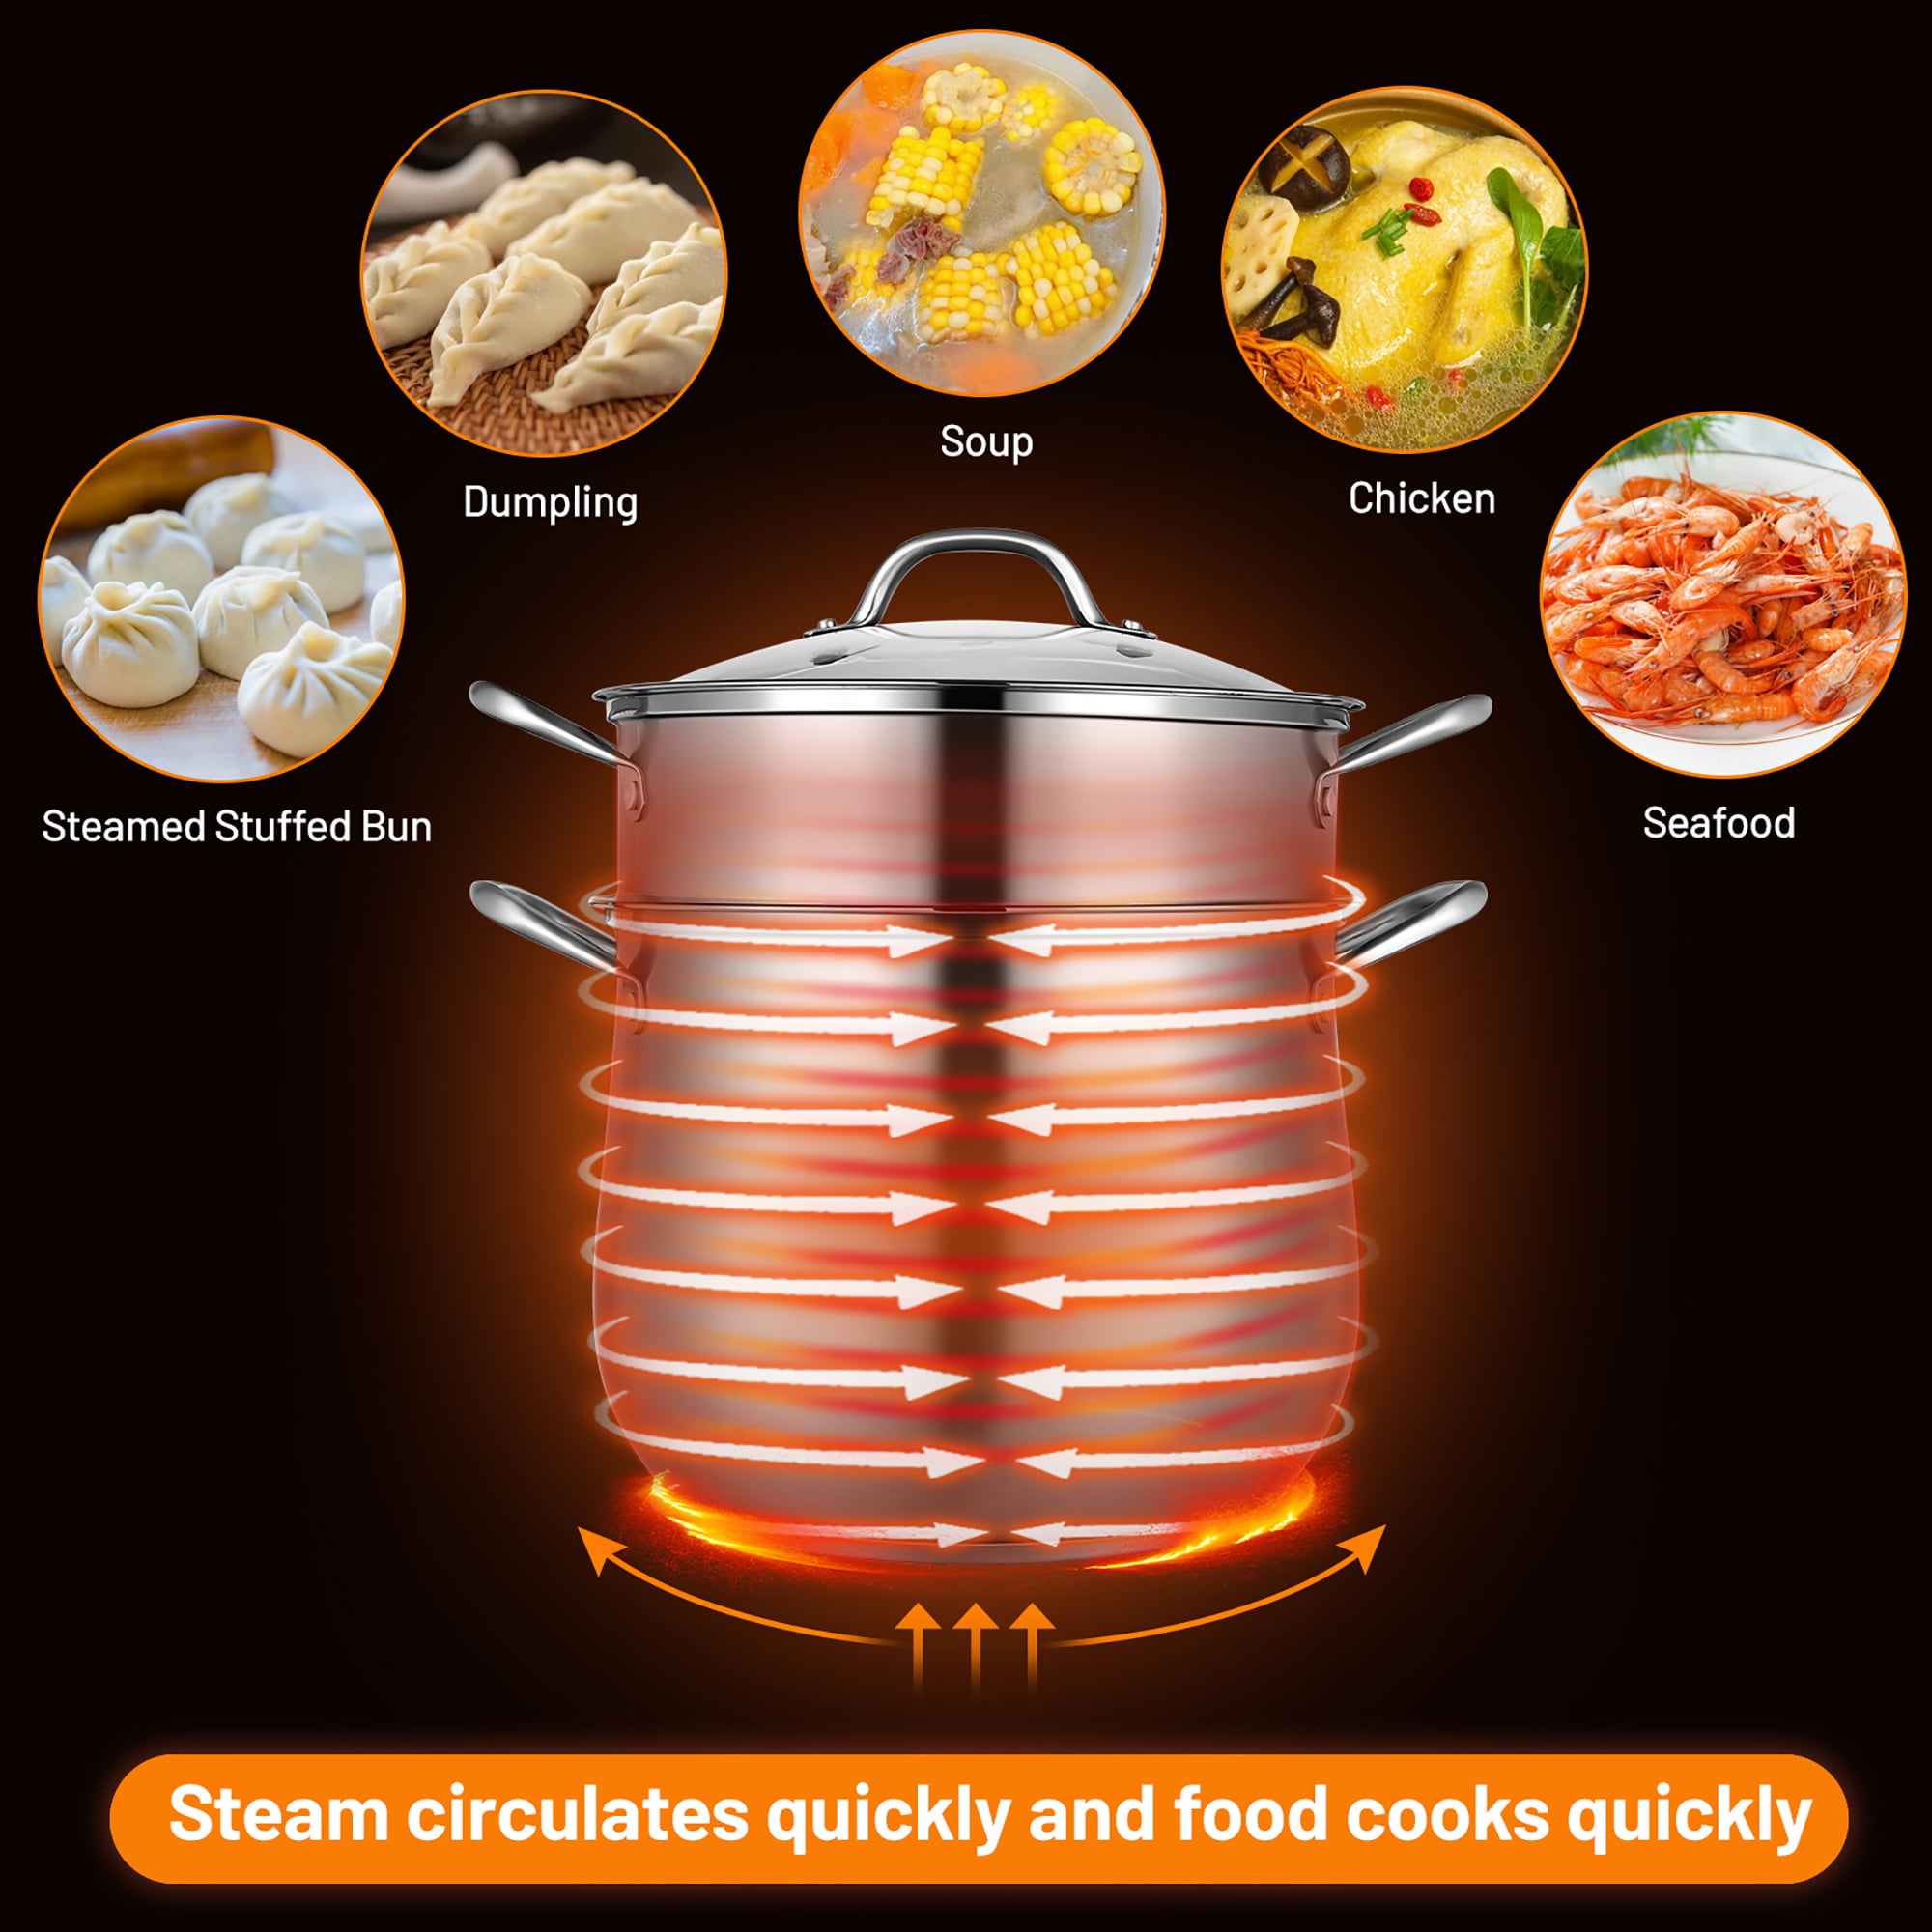 Costway 9.5 QT 2 Tier Stainless Steel Steamer Pot Cookware Boiler